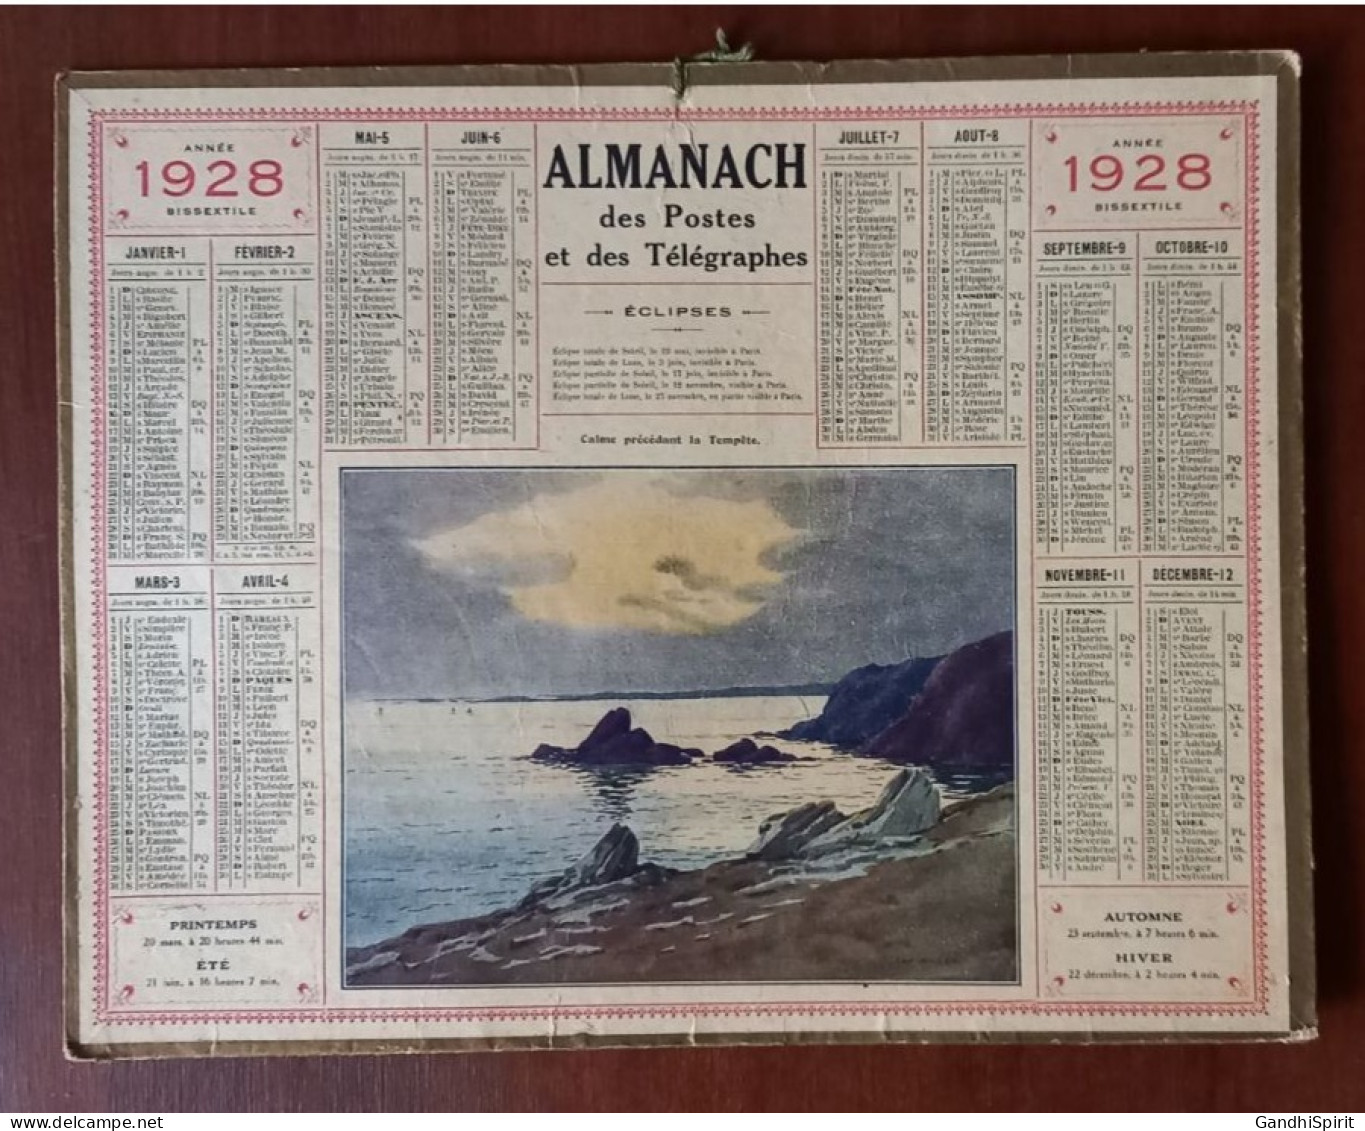 1928 Calendrier / Almanach Illustré Par ??? Calme Précédant La Tempête (Bord De Mer) Année Bissextile - Tamaño Grande : 1921-40